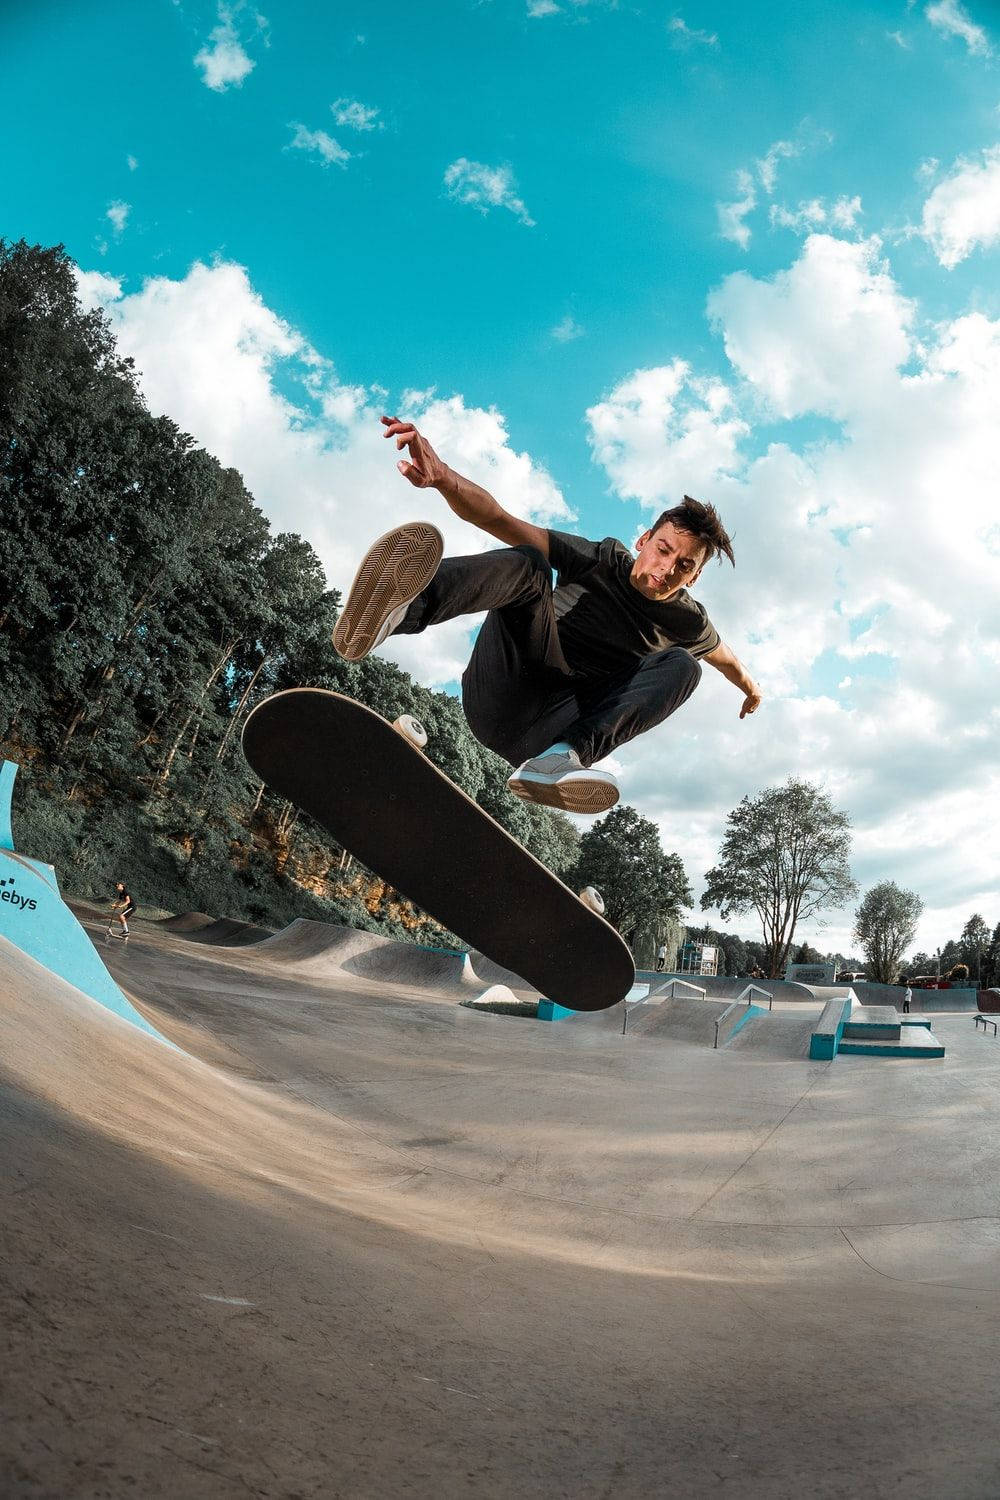 Aesthetic Skateboard Blue Sky Wallpaper